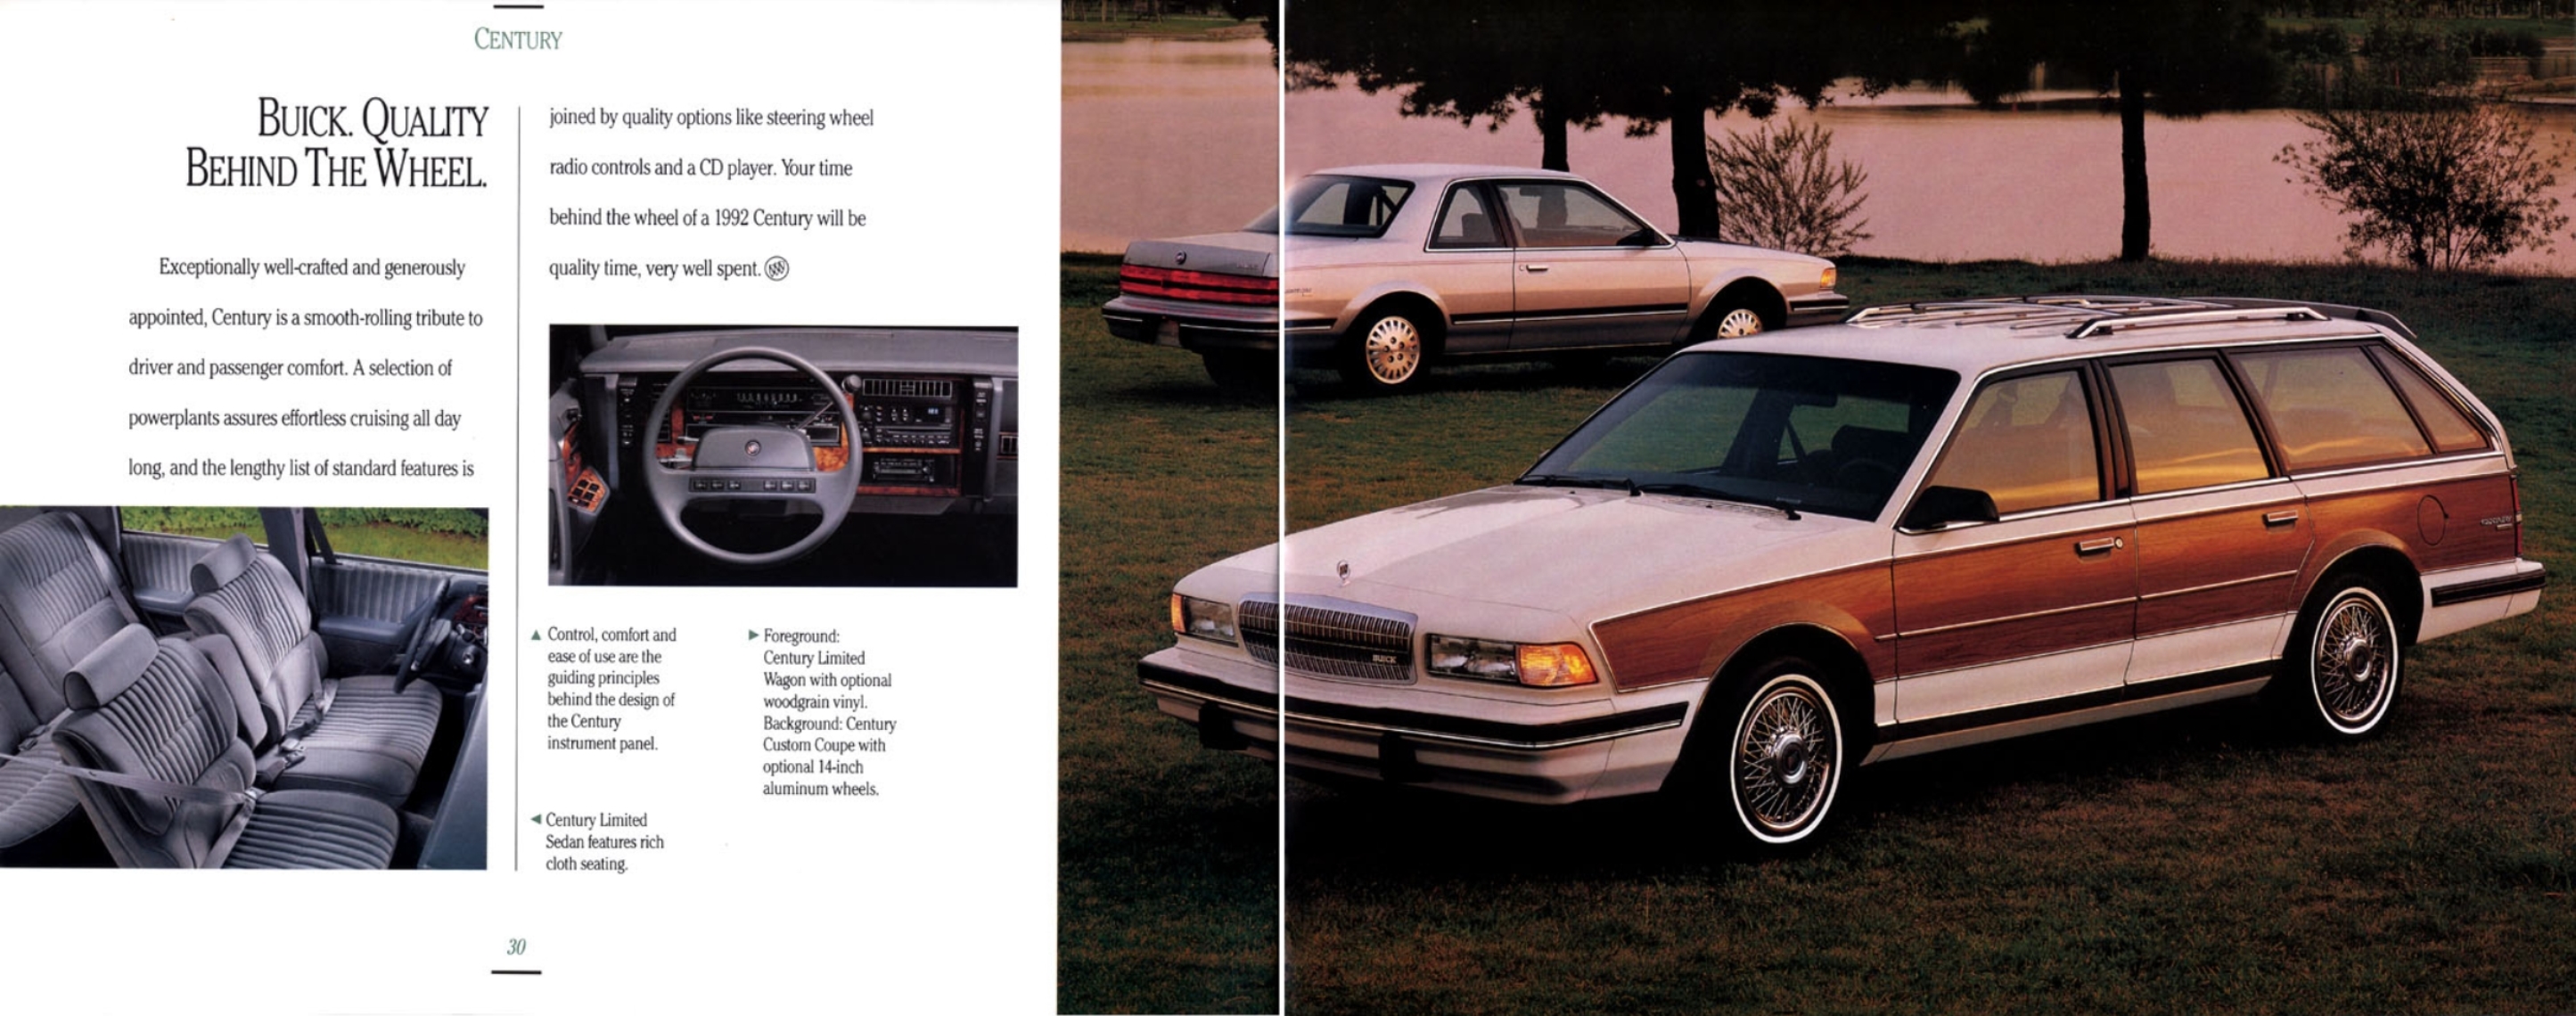 1992 Buick Full Line-30-31